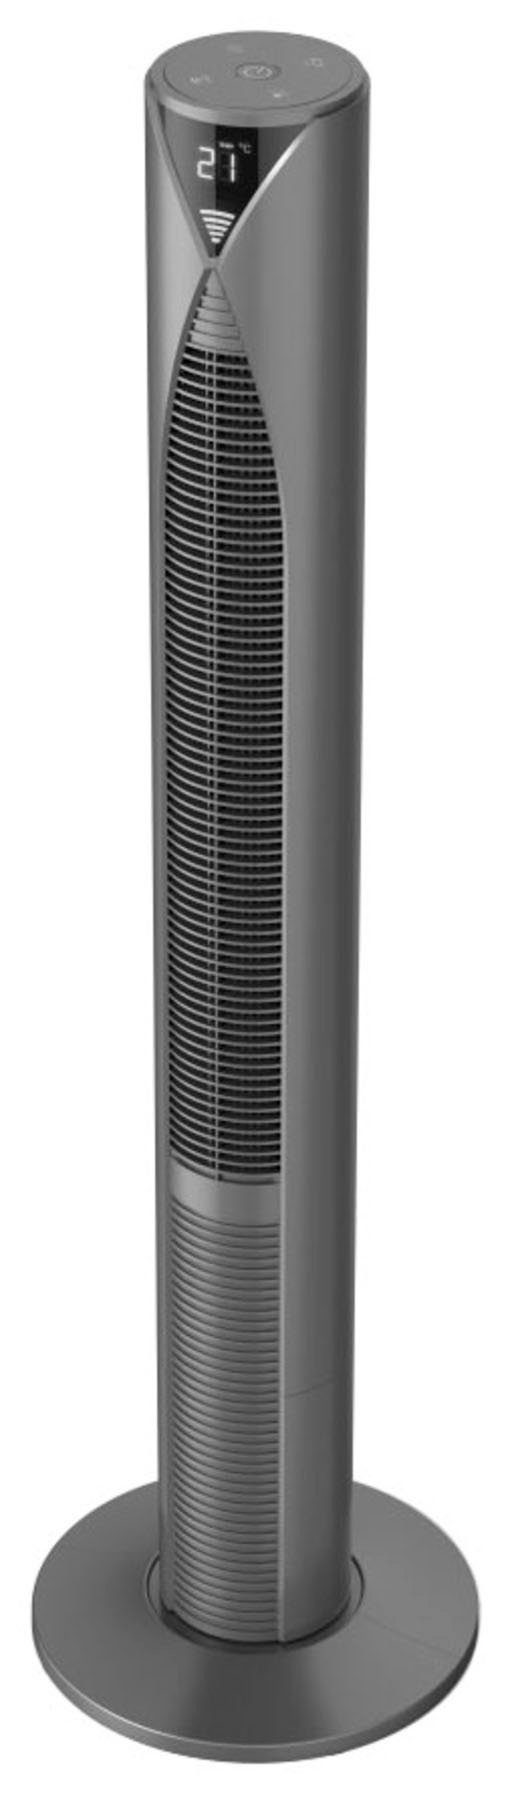 Hama Standventilator Smarter Standventilator mit Geschwindigkeitsstufen, energiesparend Timer, Modus Turm, mit Displayanzeige, Fernbedienung Standby 117cm, 3